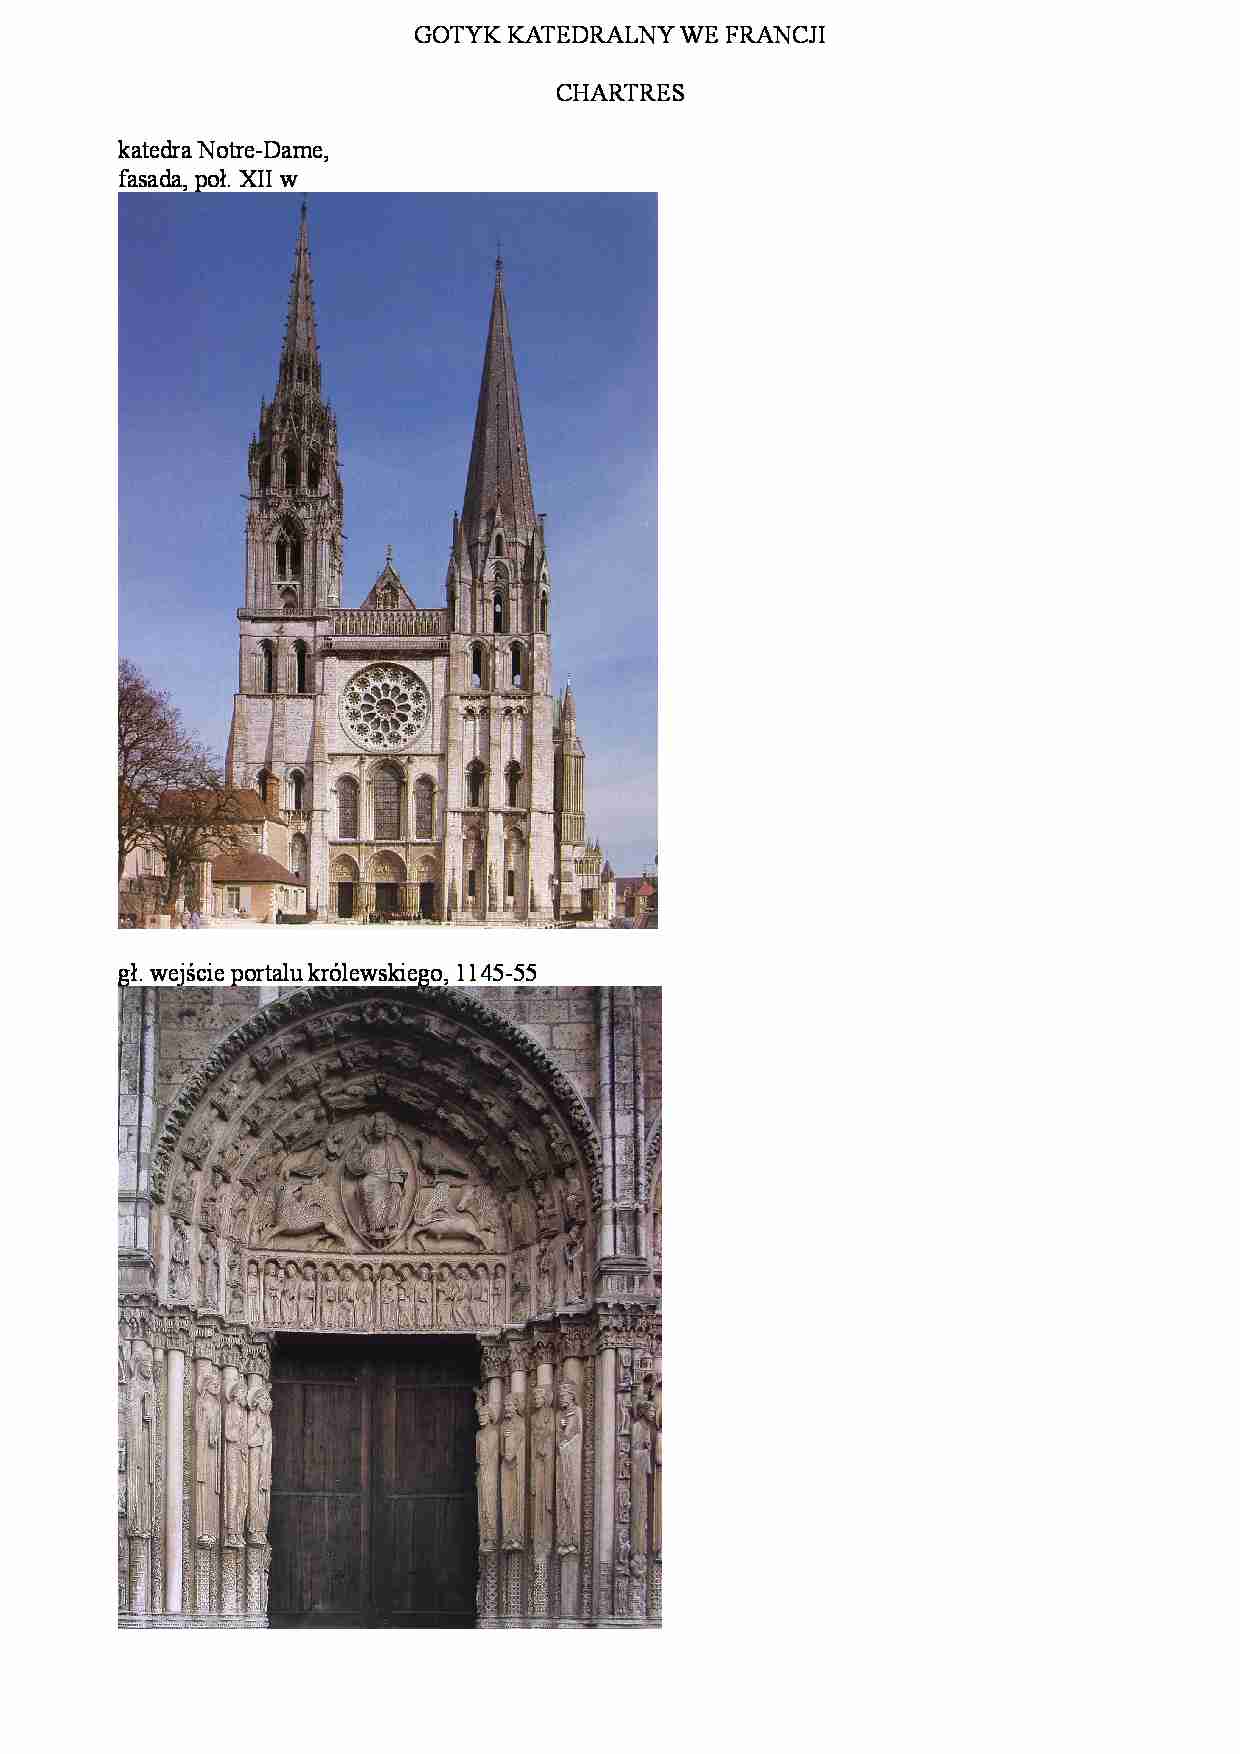 Gotyk katedralny we Francji-Chartres - strona 1